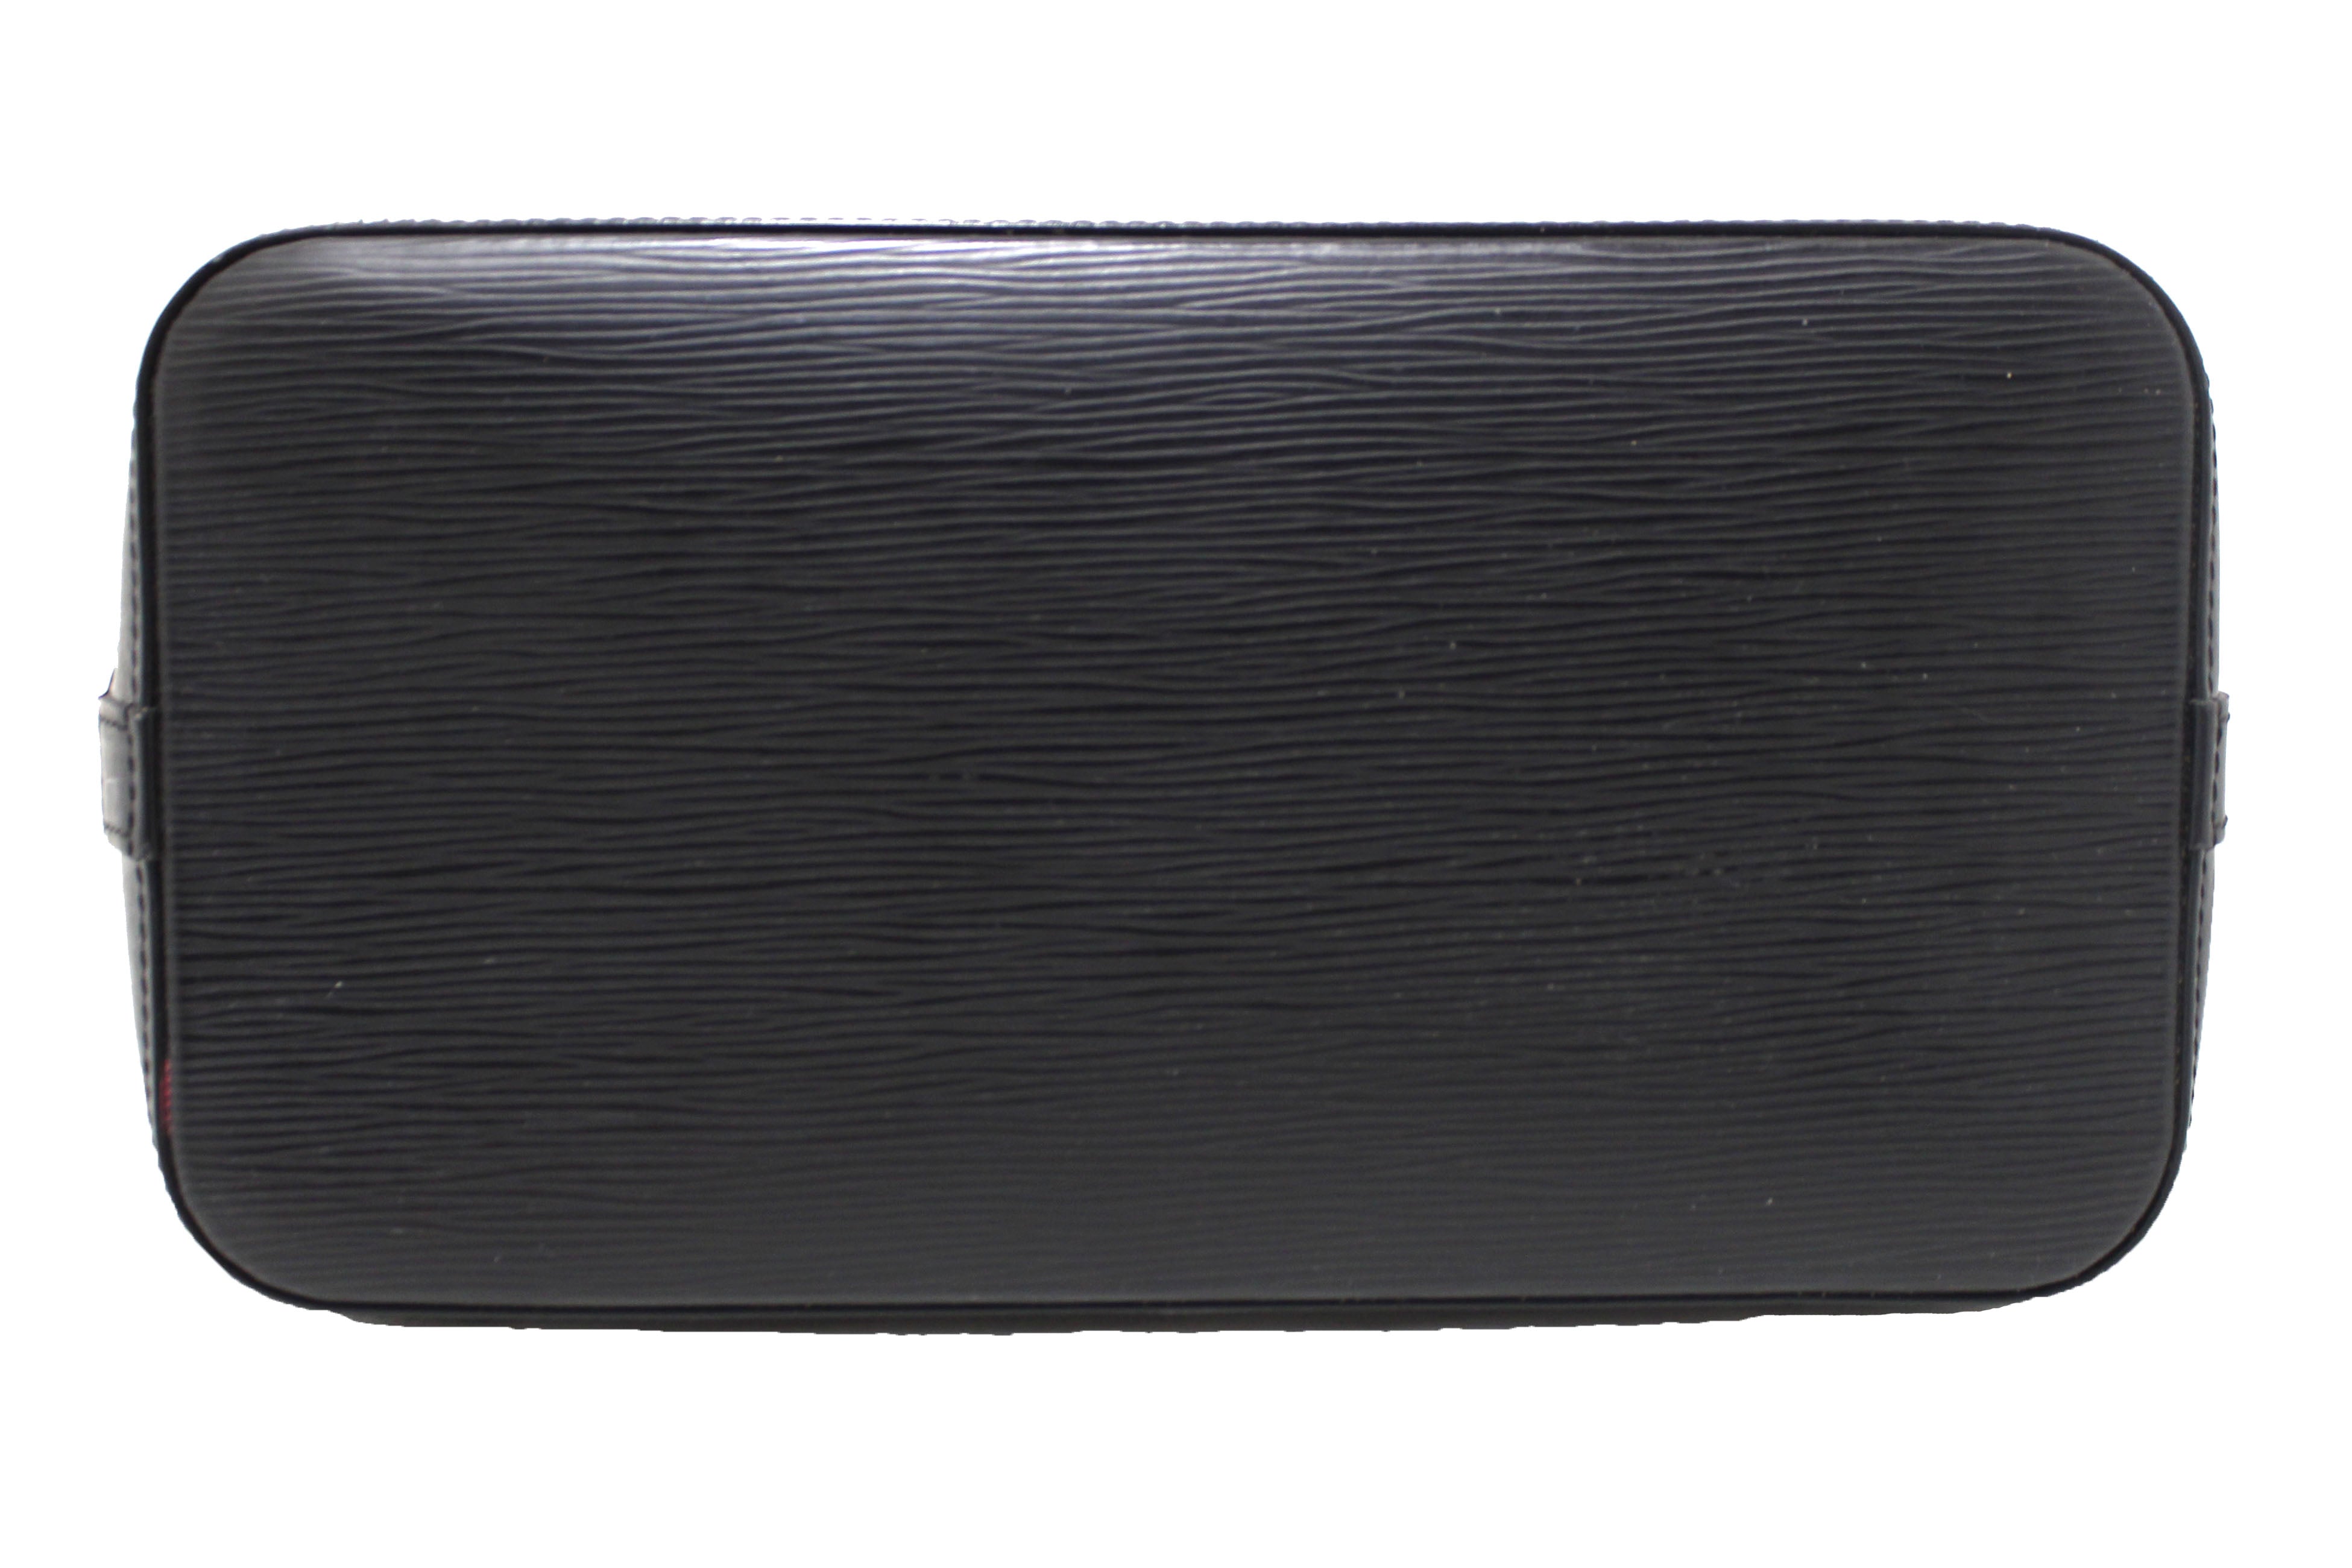 Authentic Louis Vuitton Black Epi Leather Alma PM Hand Bag